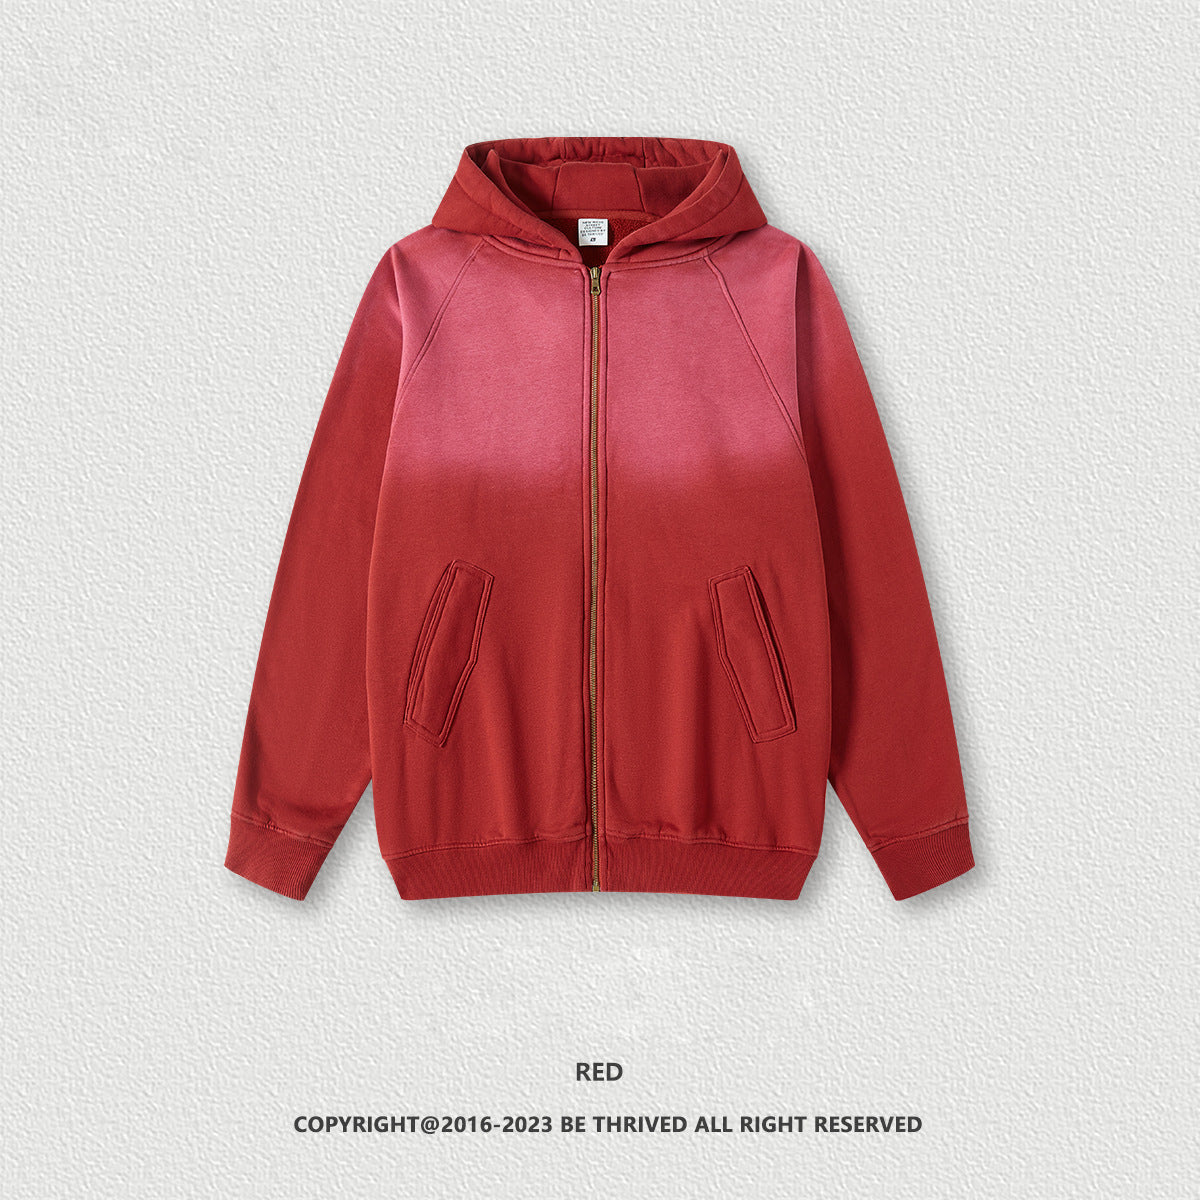 W1036 370GSM American tide brand retro washed hoodies men's loose plus velvet hooded sweatshirt jacket